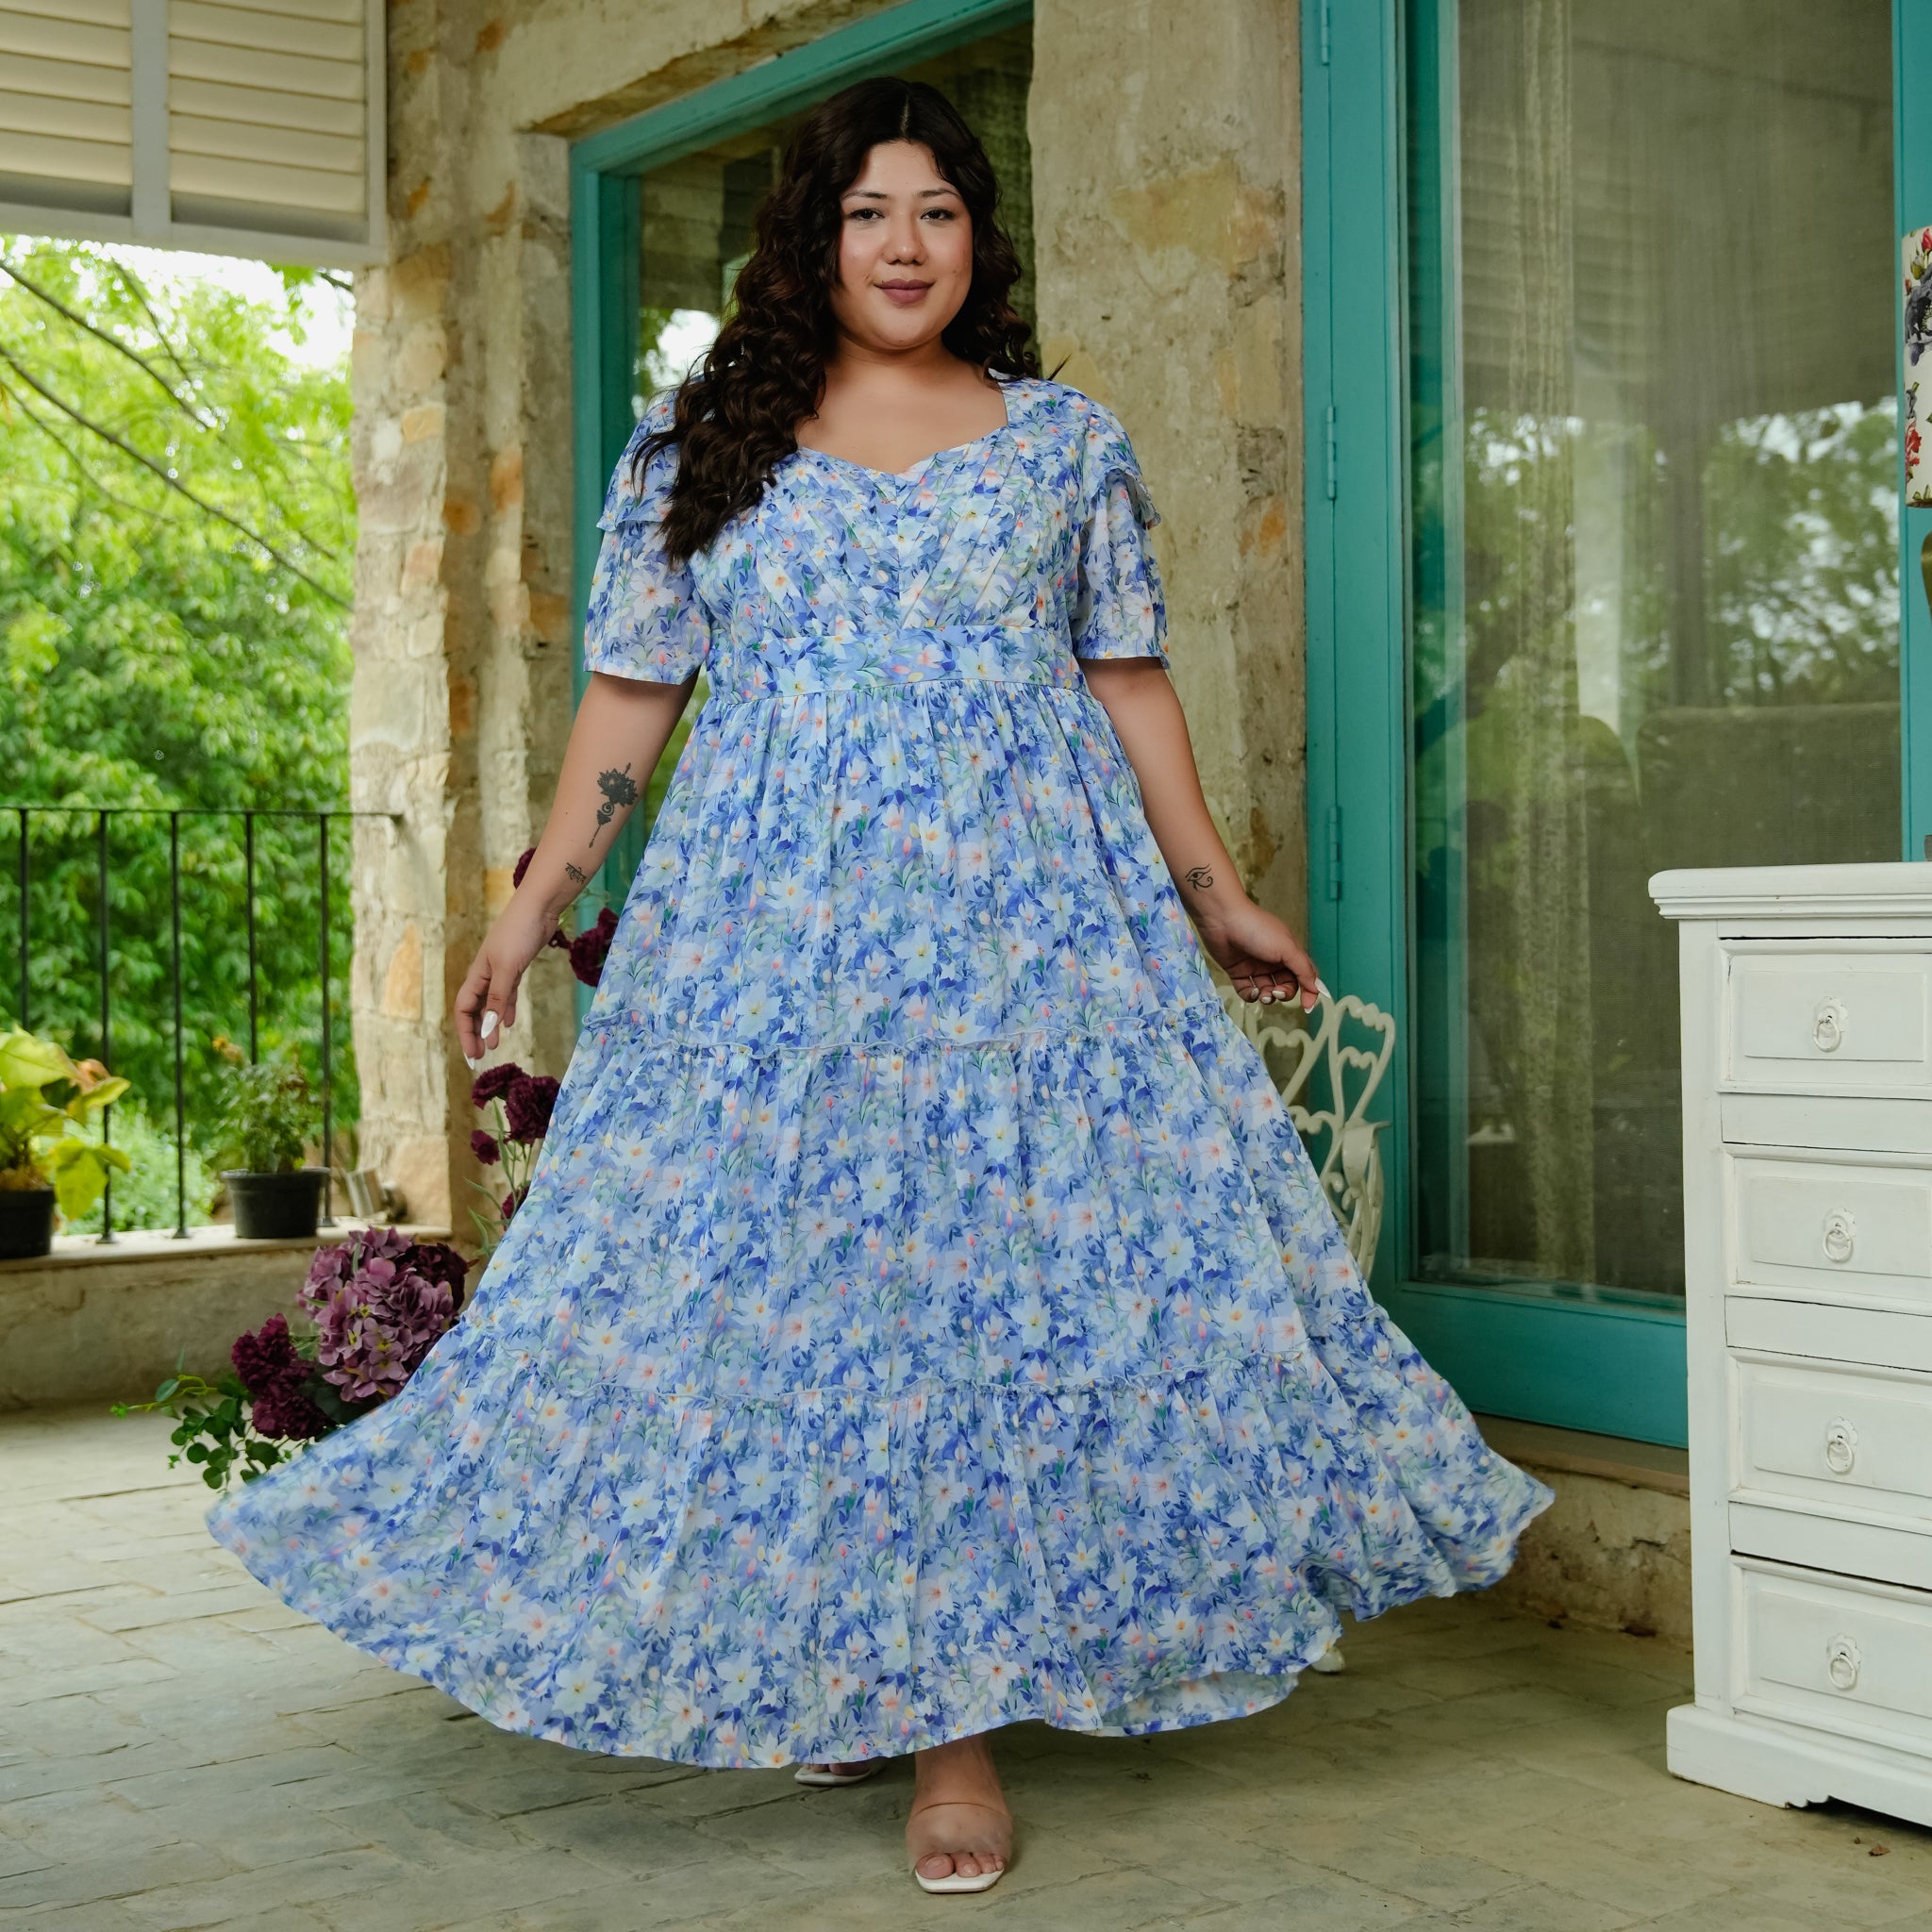 Lopez Sky Blue Floral Maxi Dress